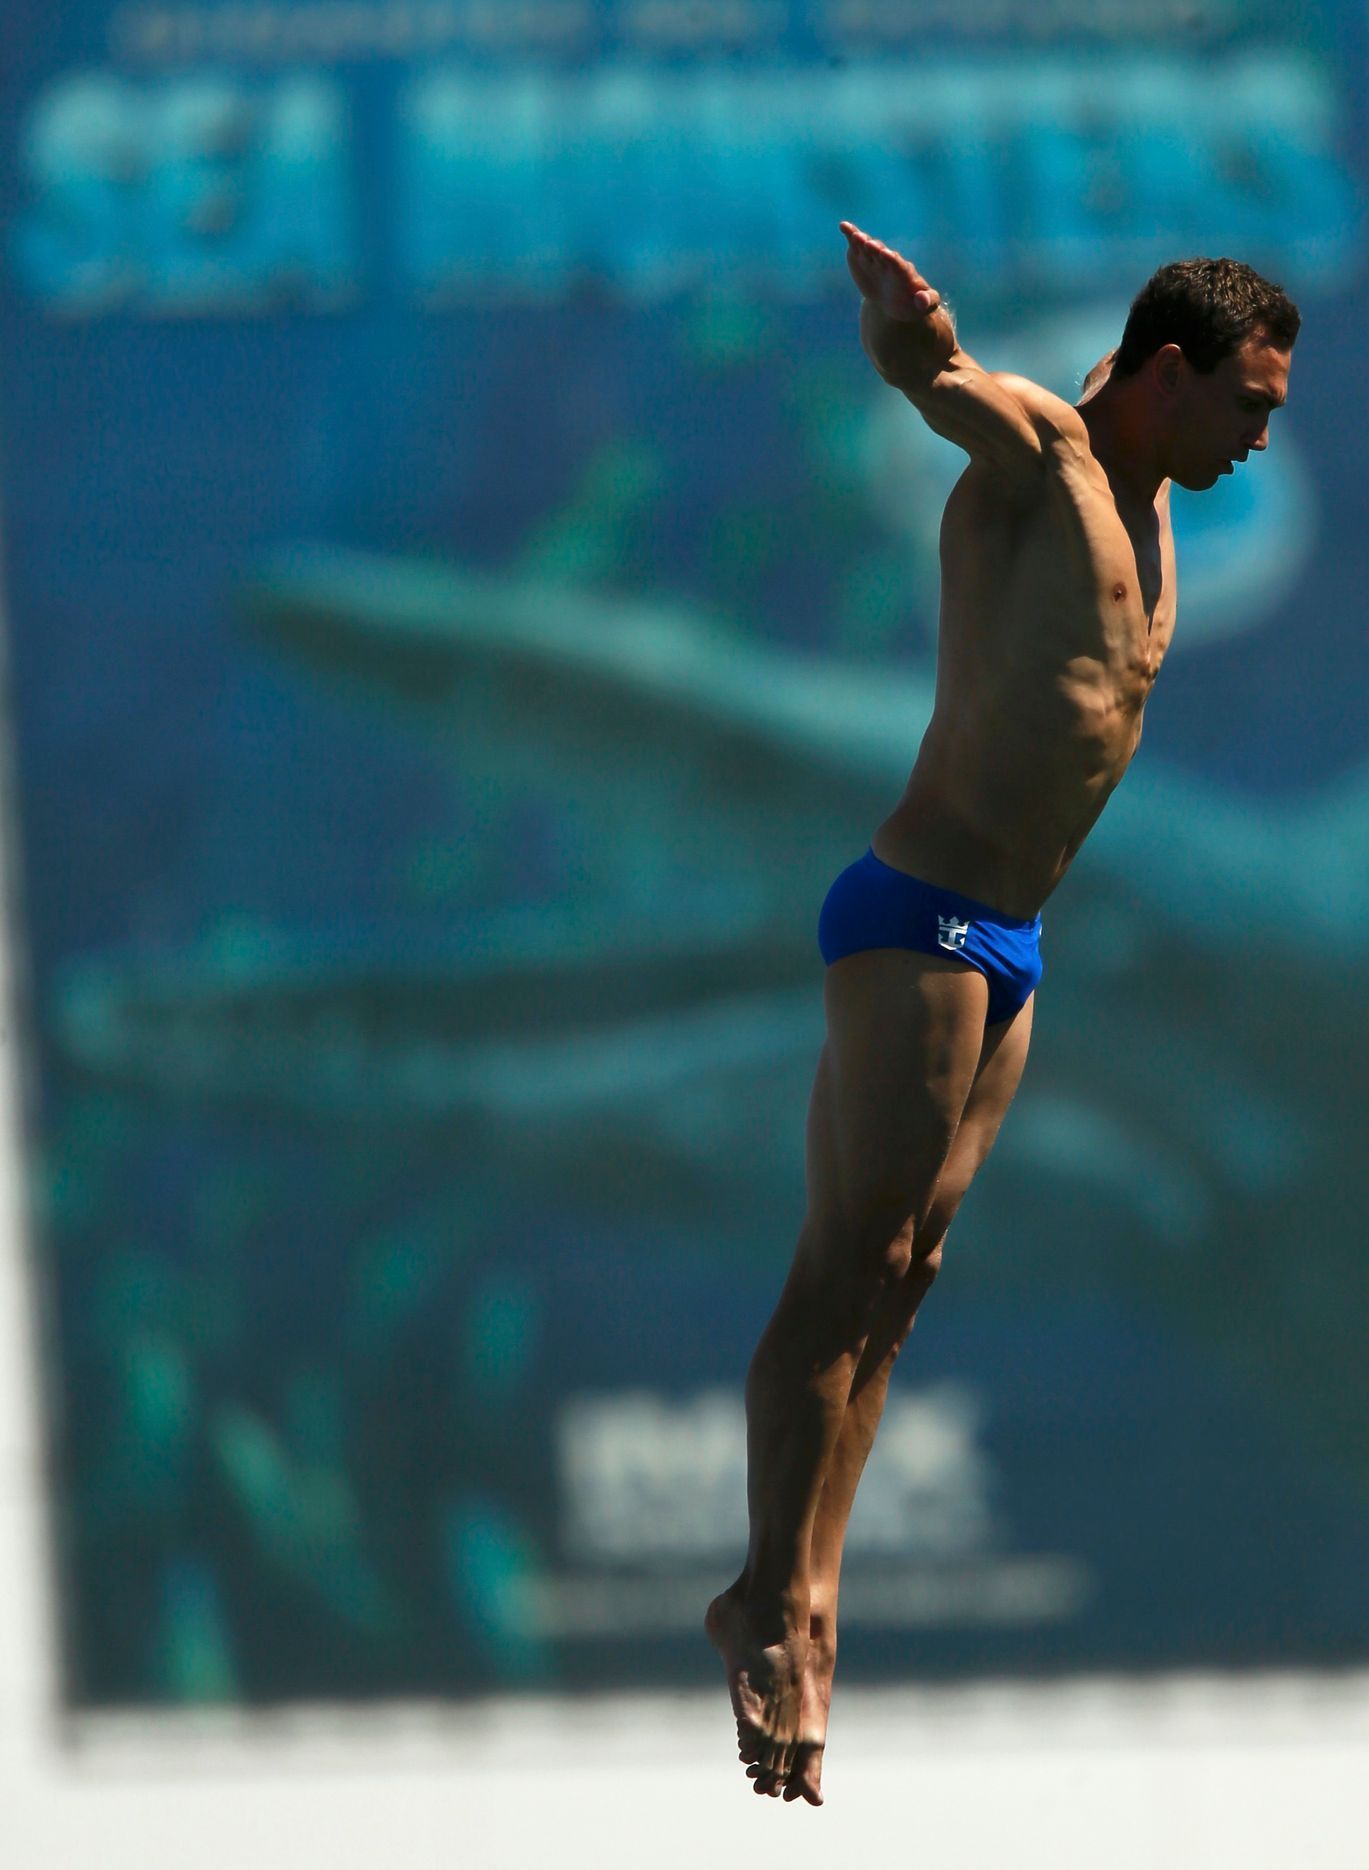 MS v plavání Barcelona 2013, skoky do vody: Michal Navrátil